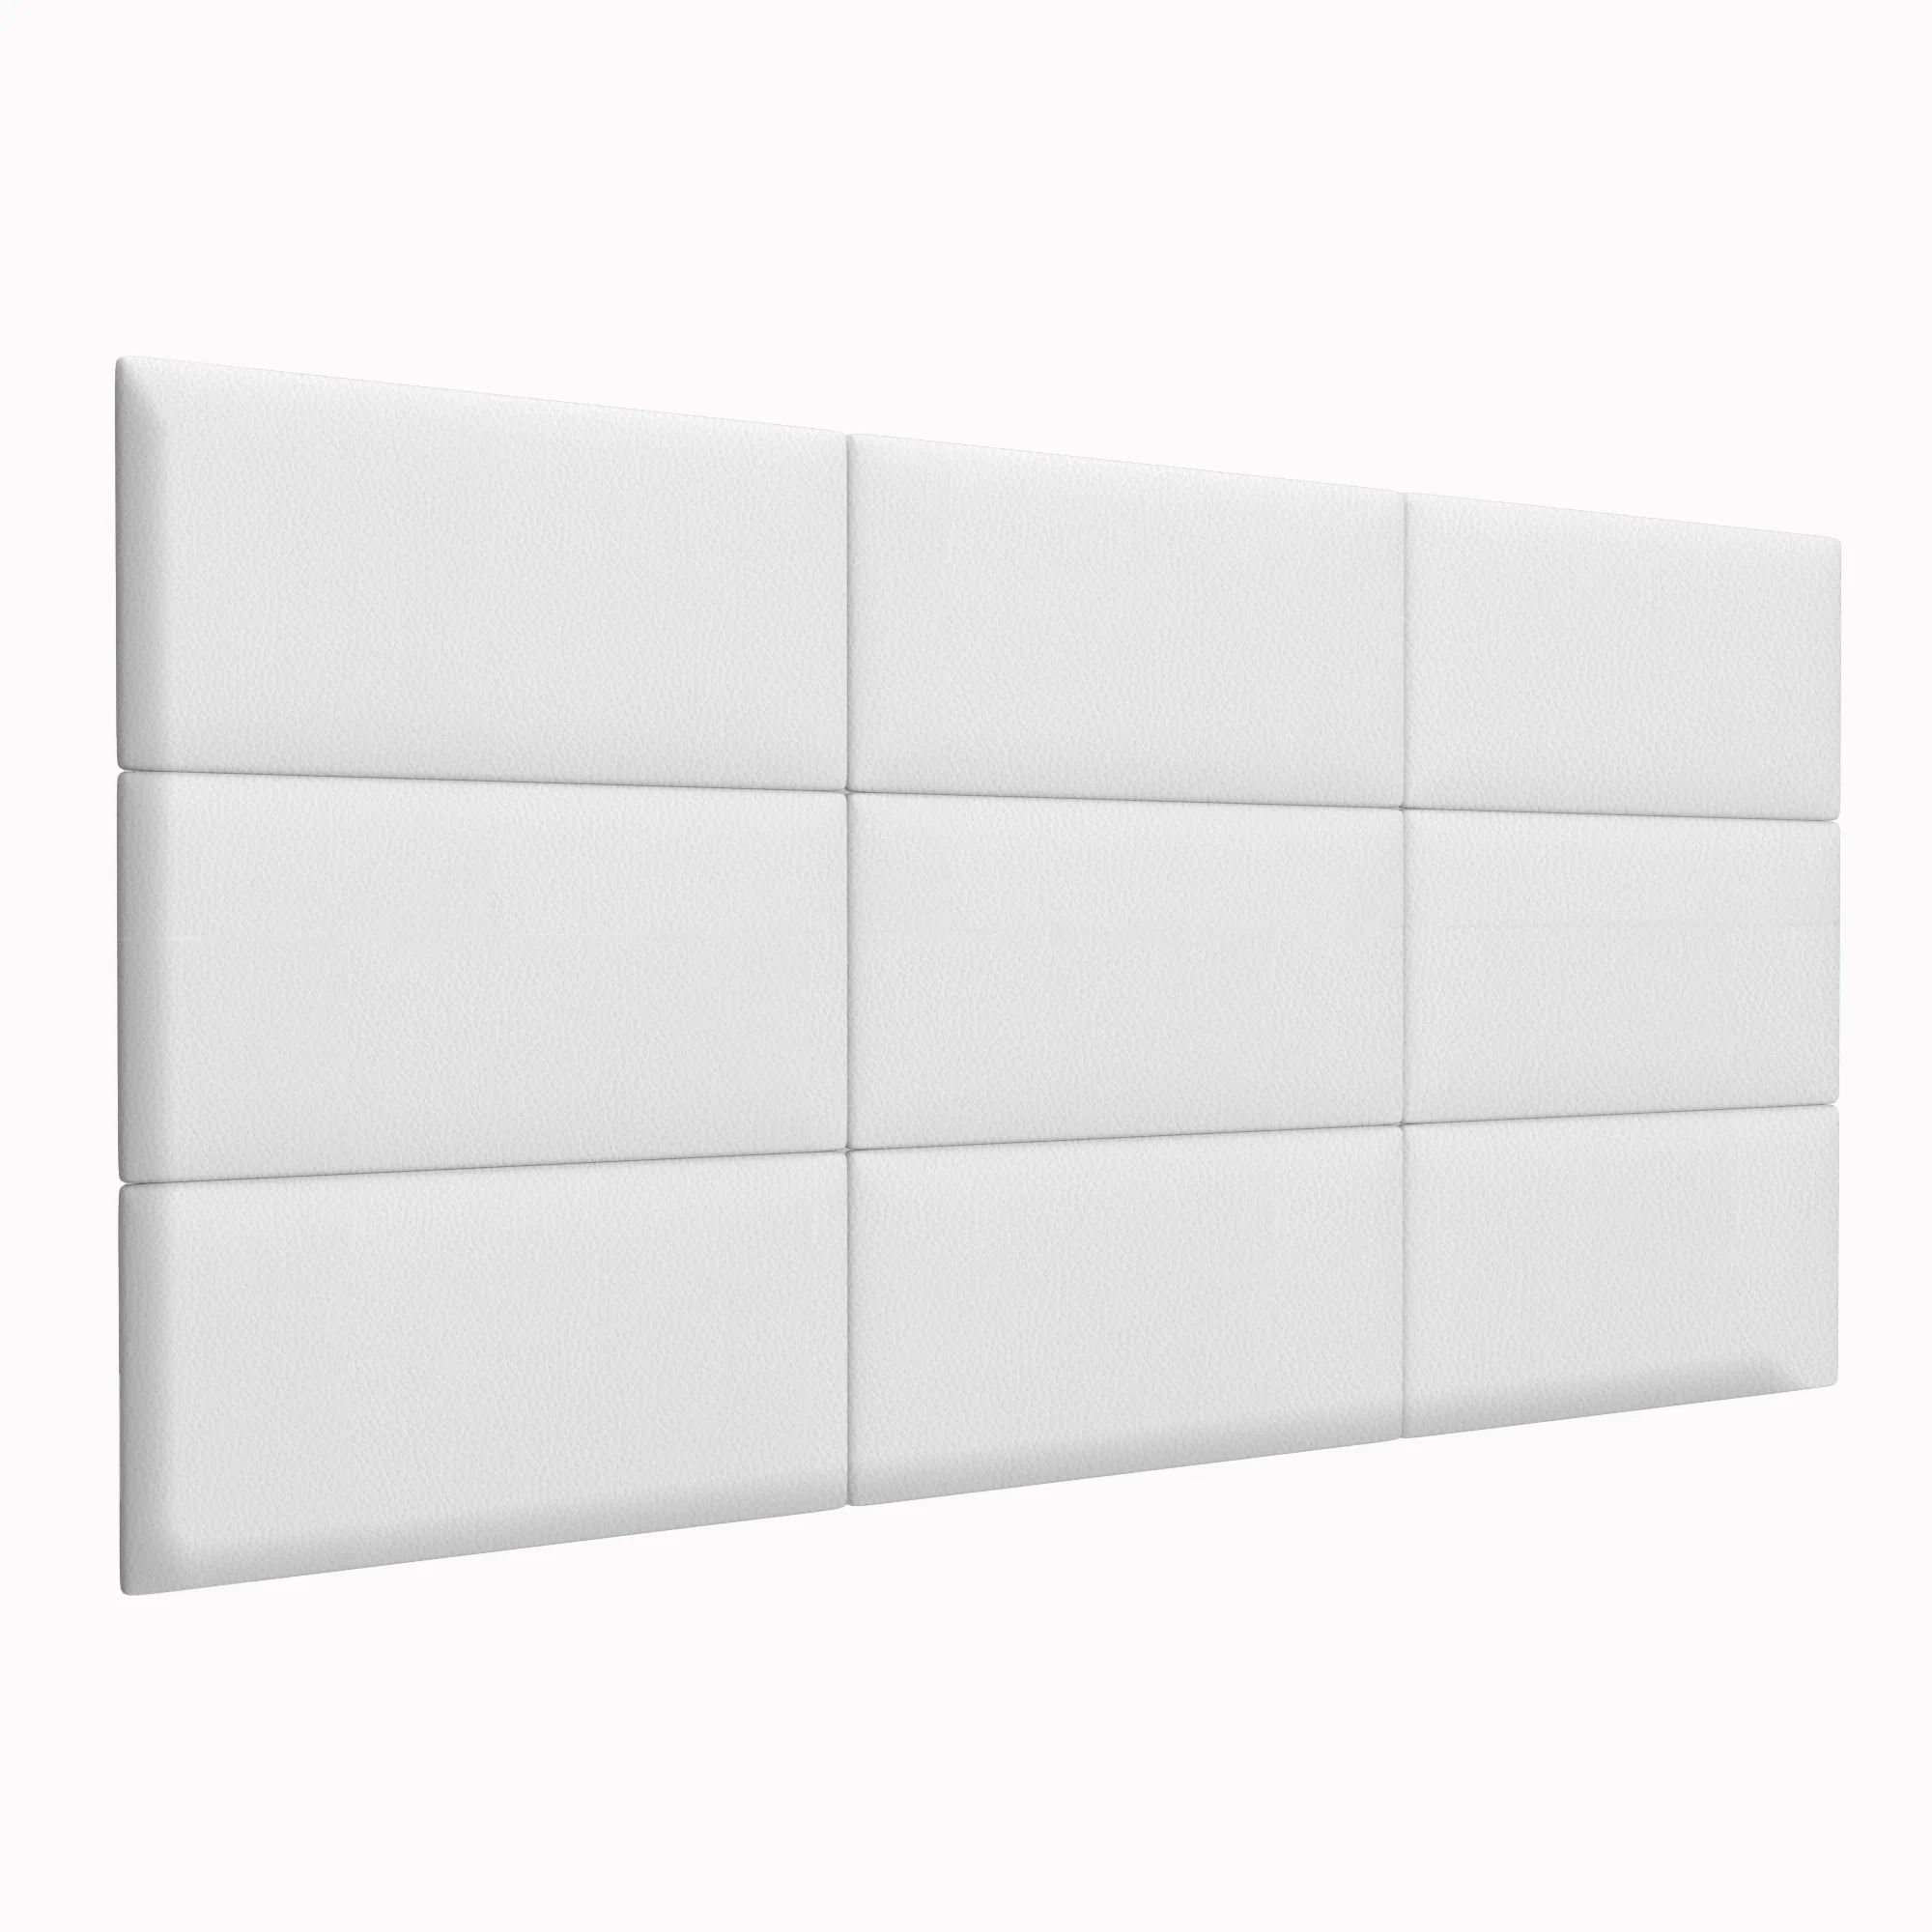 Стеновая панель Eco Leather White 30х60 см 4 шт.